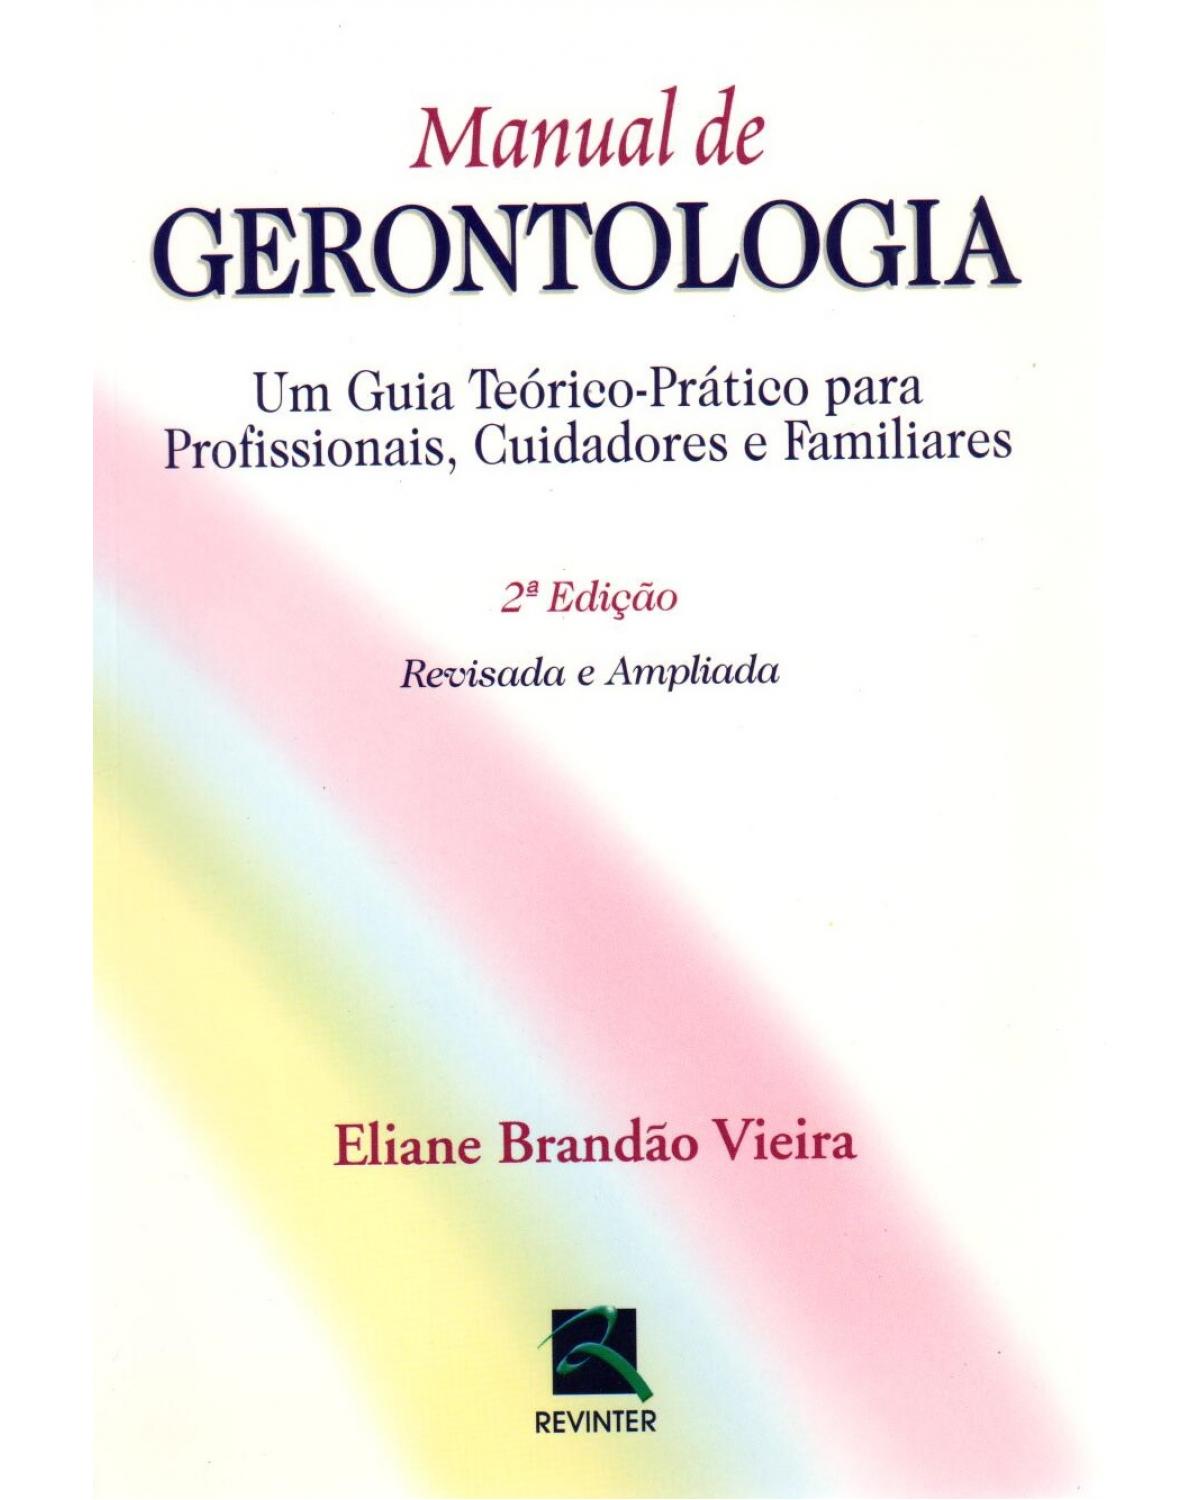 Manual de gerontologia: um guia teórico-prático para profissionais, cuidadores e familiares - 2ª Edição | 2004